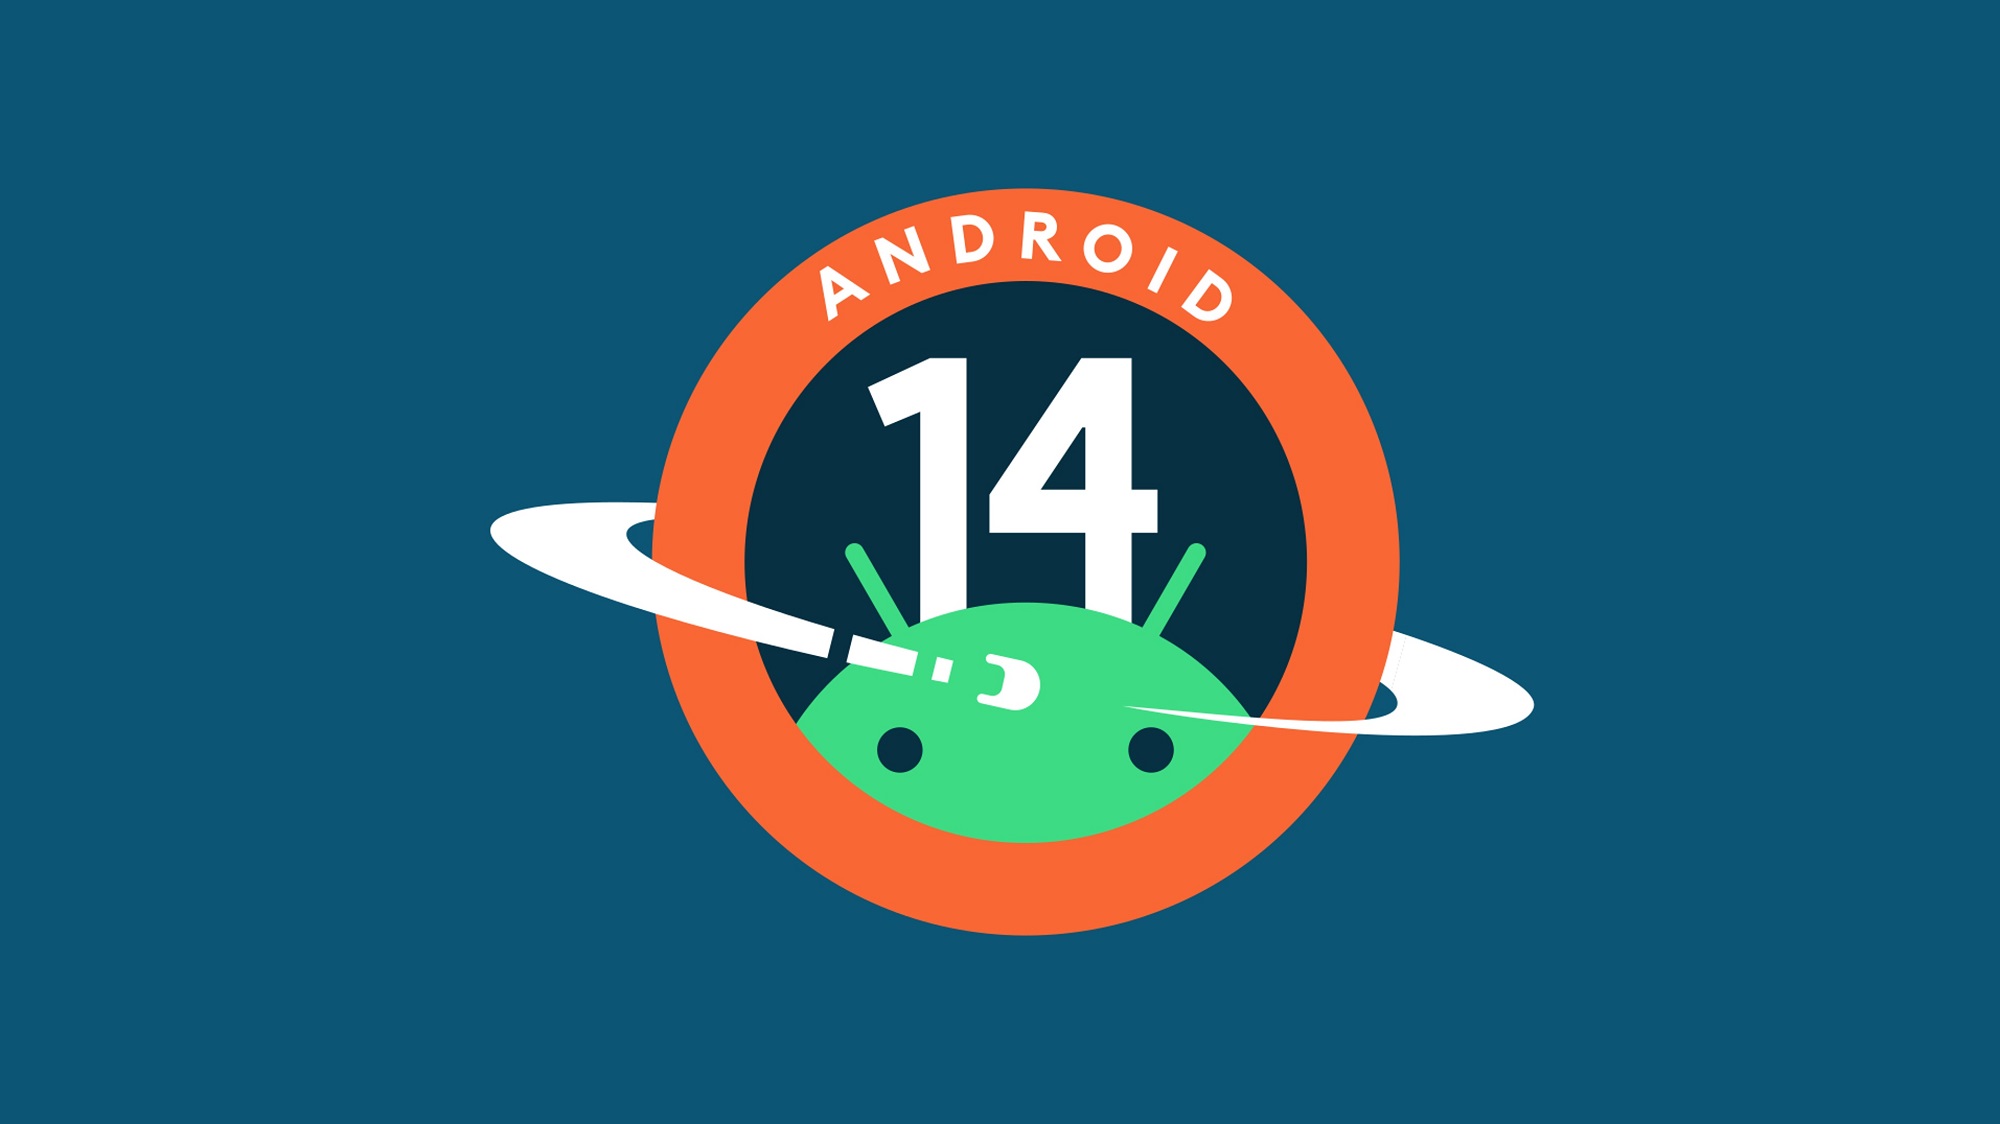 4 oktober: Den kanadensiska operatören Telus har avslöjat releasedatum för den stabila versionen av Android 14